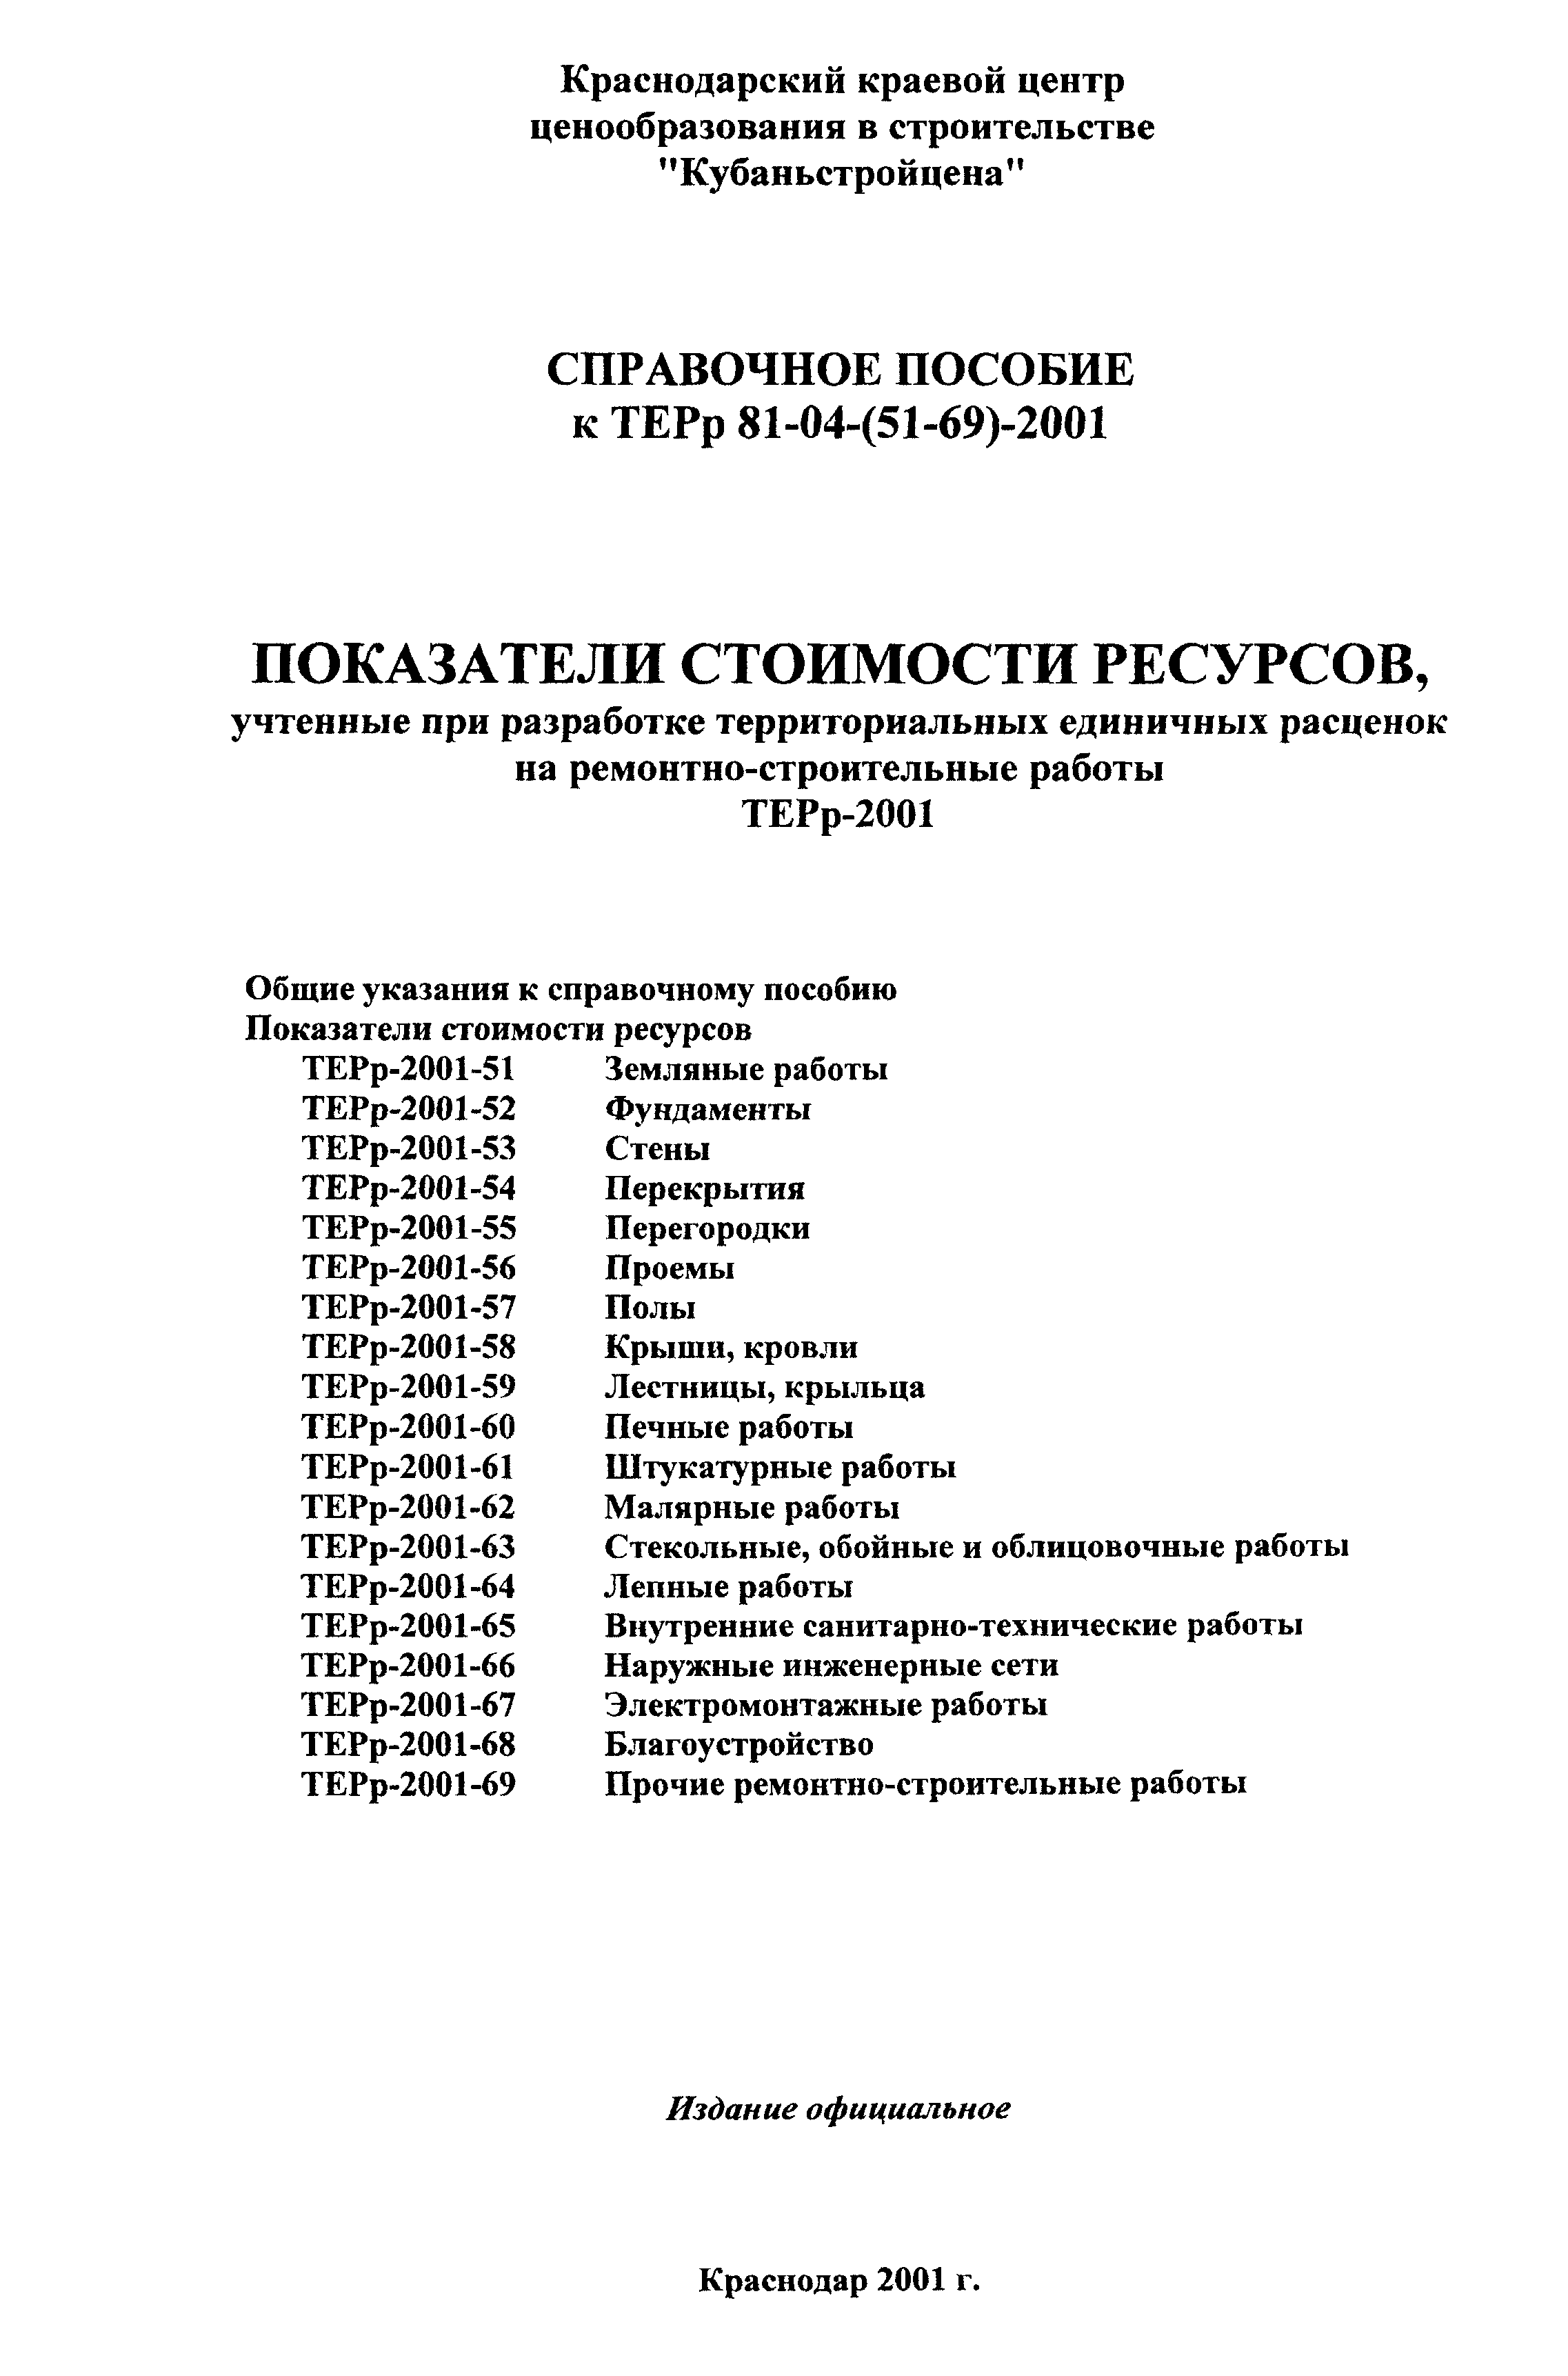 Справочное пособие к ТЕРр 81-04-56-2001